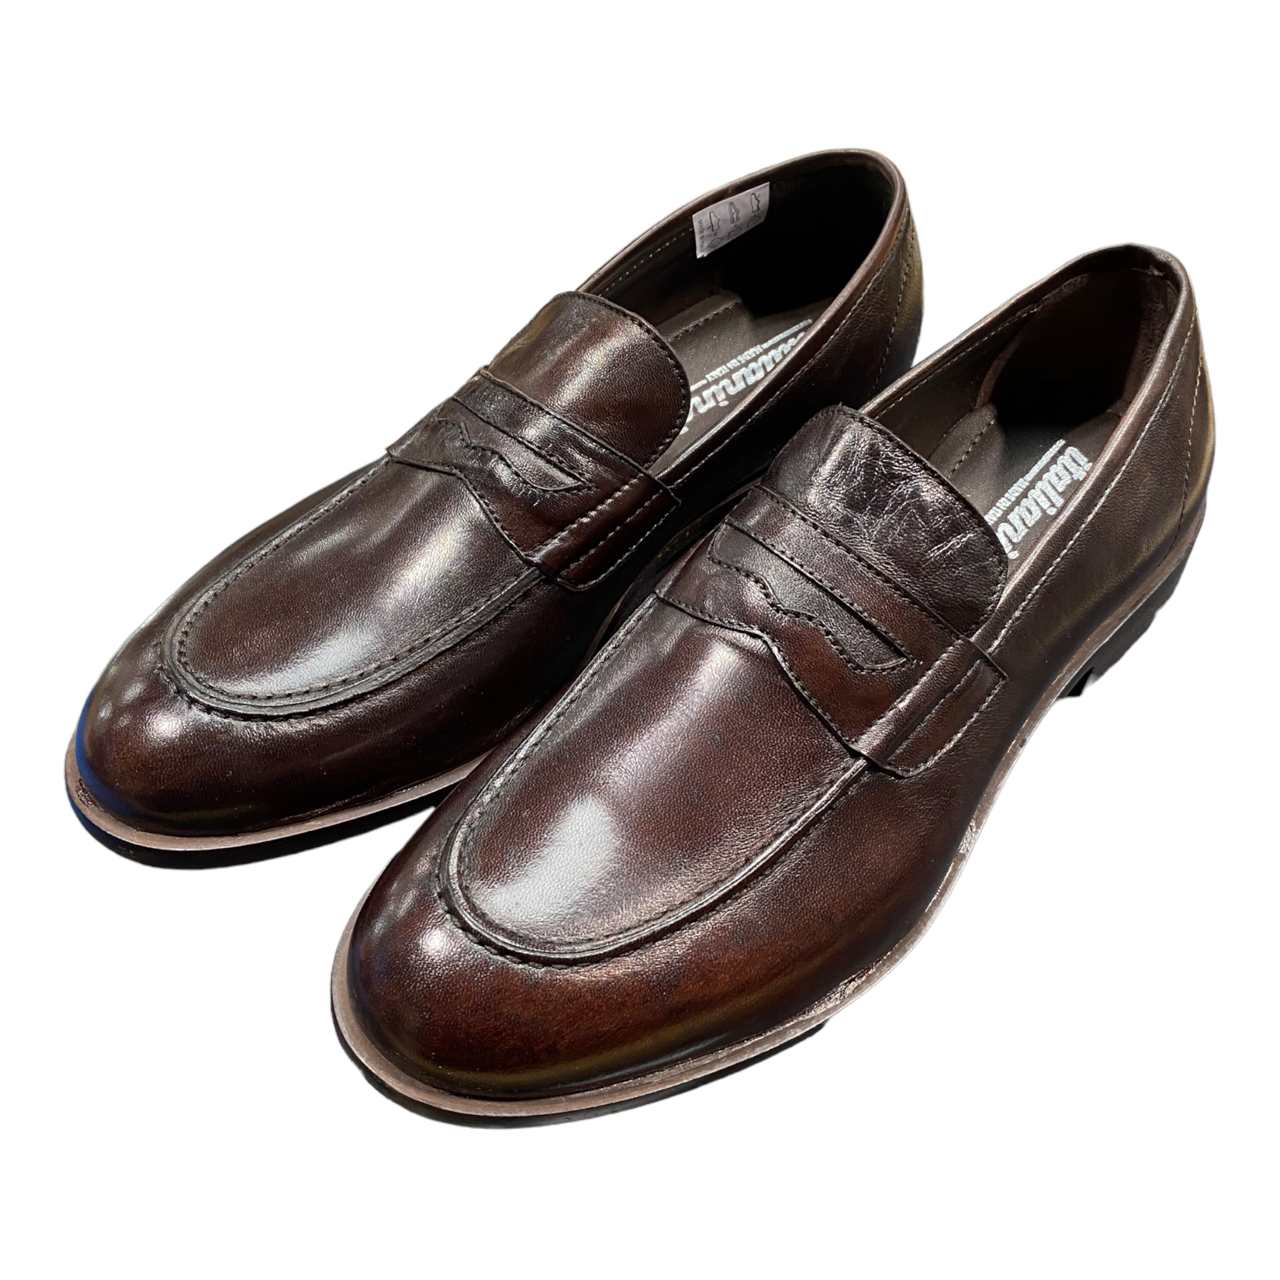 Emporio Italia - Italianino Leather Loafer - Brown